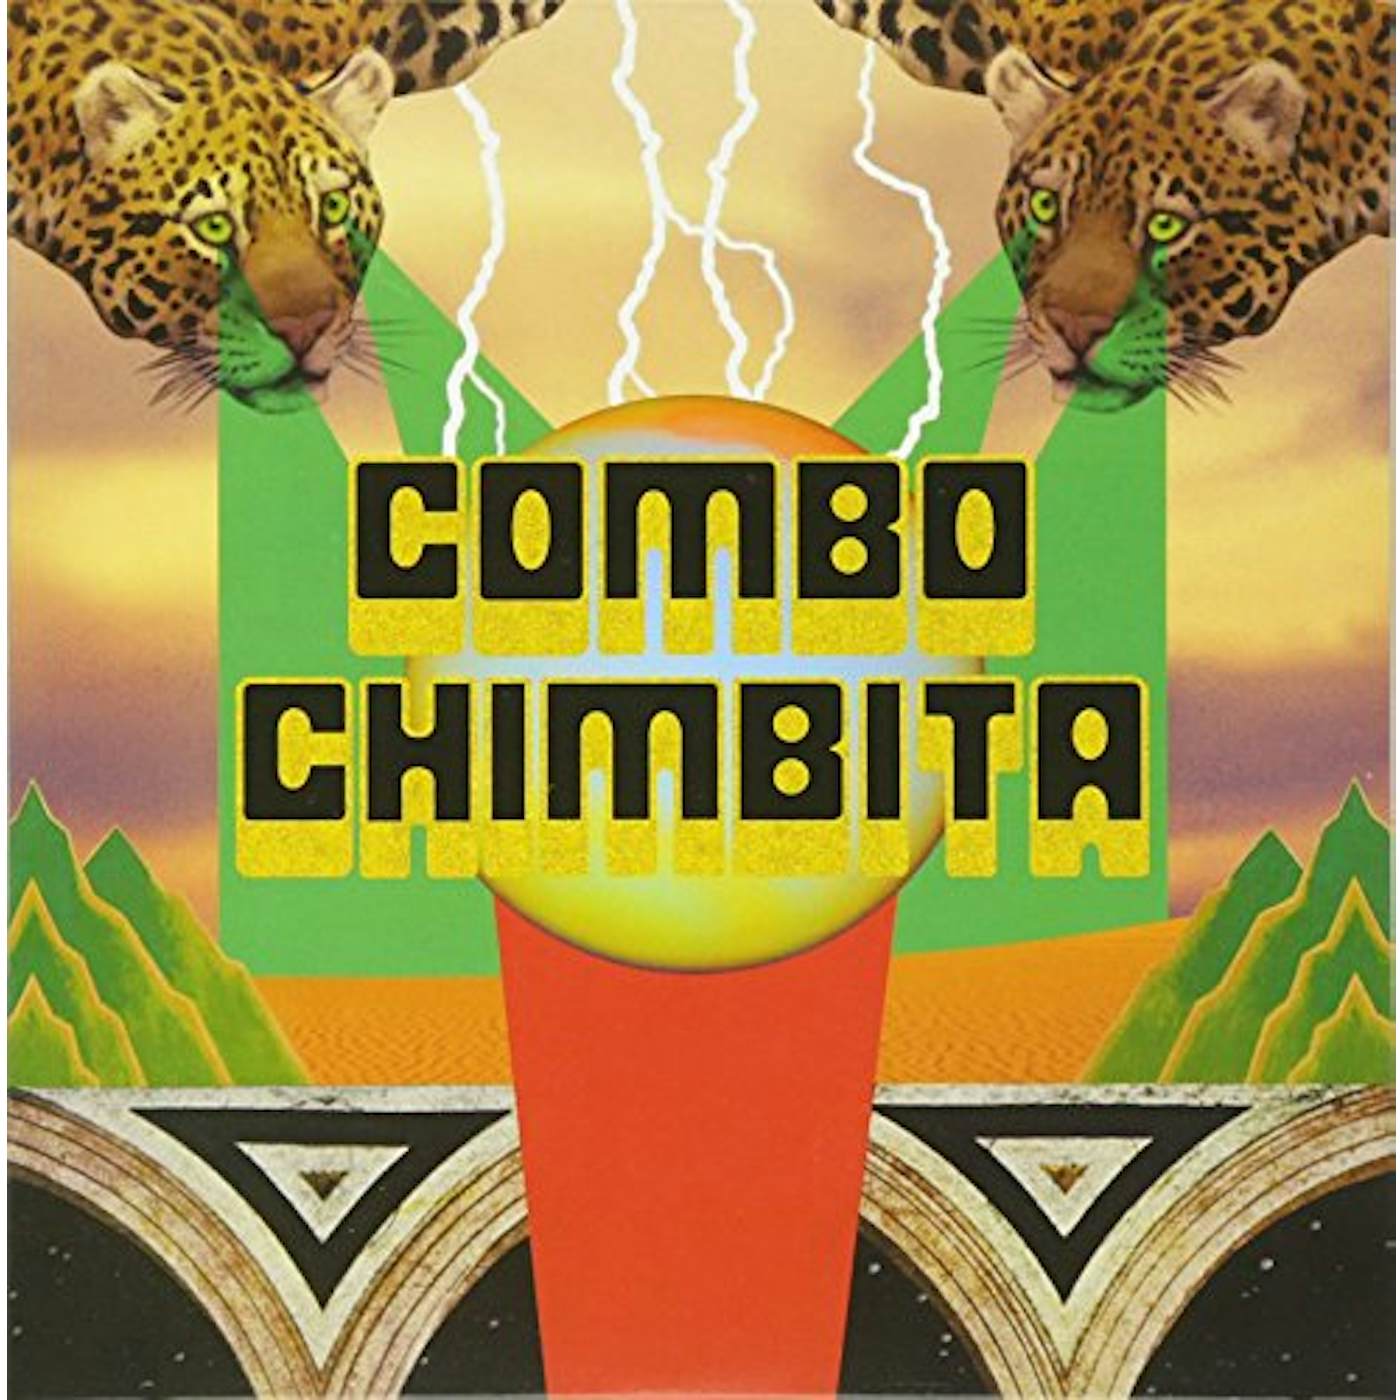 Combo Chimbita El Corredor Del Jaguar Vinyl Record